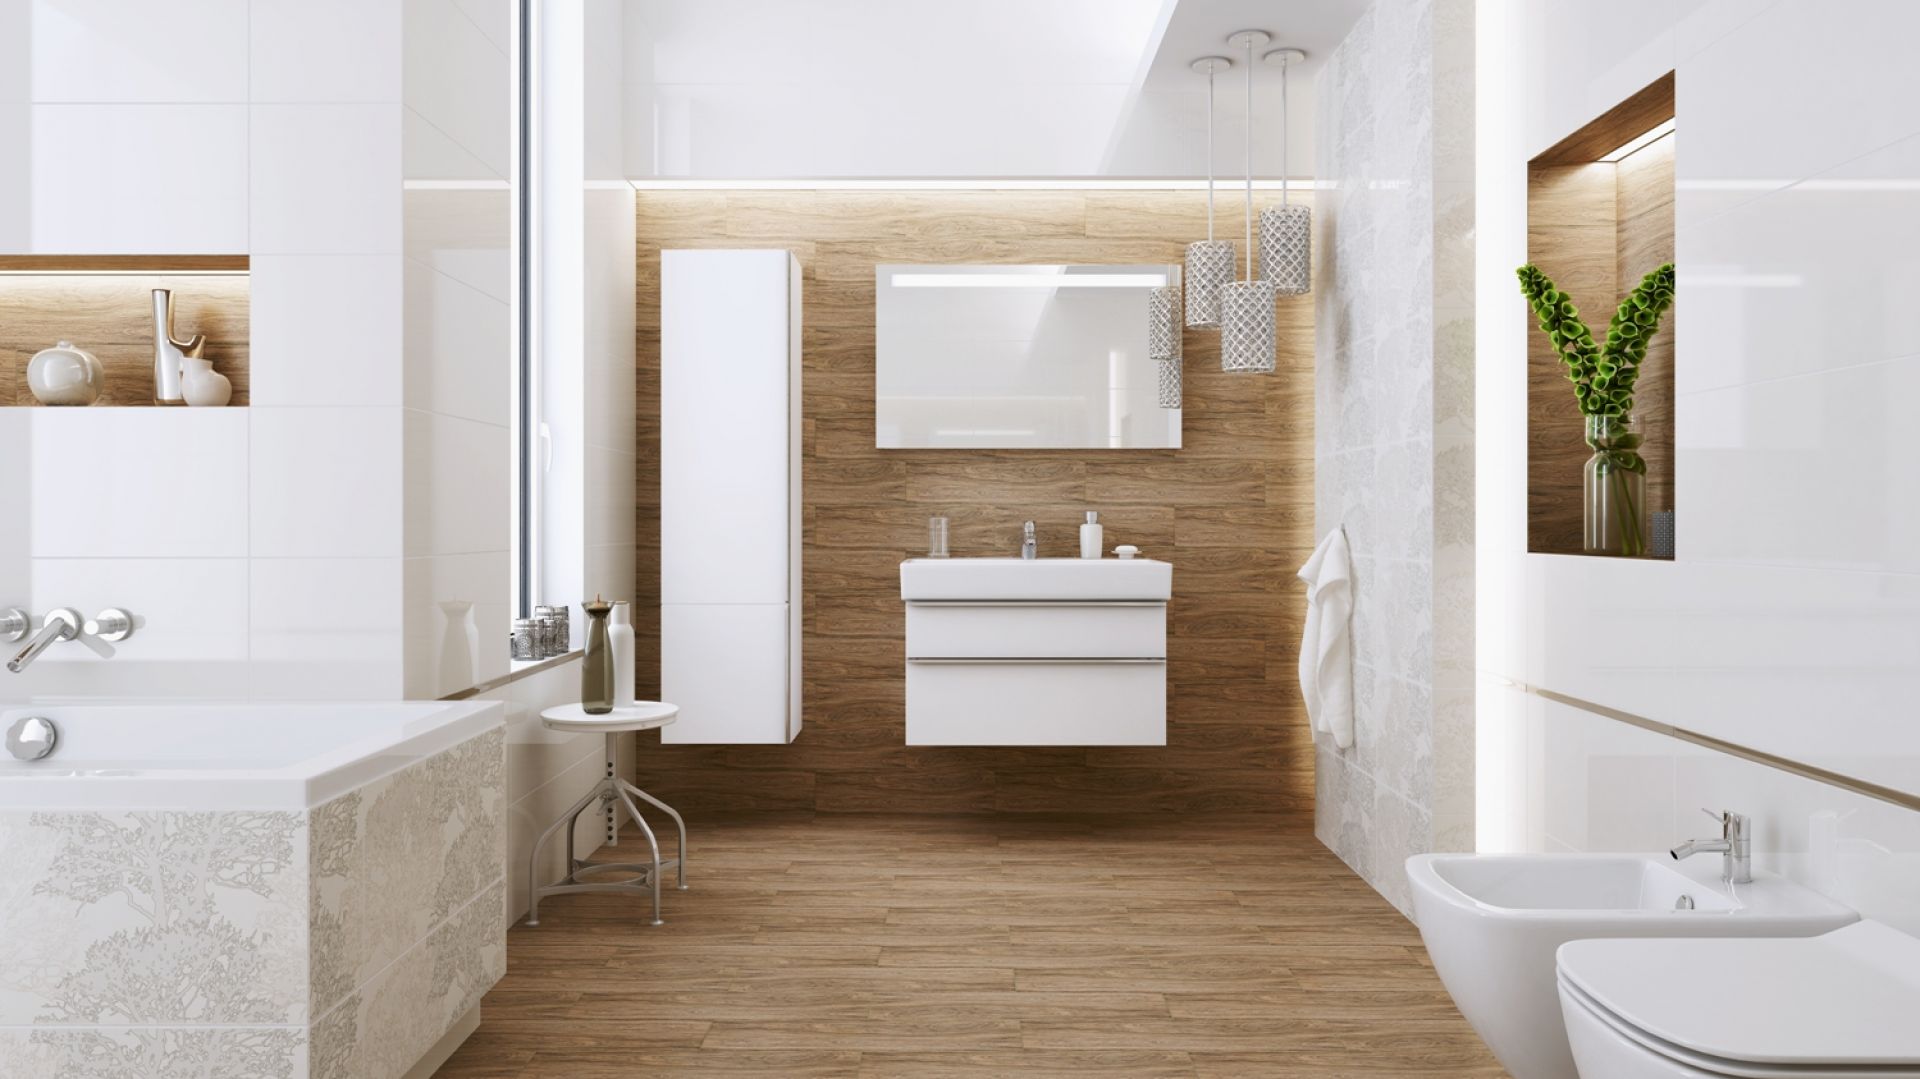 Biała łazienka ocieplona drewnem: 10 inspirujących aranżacji